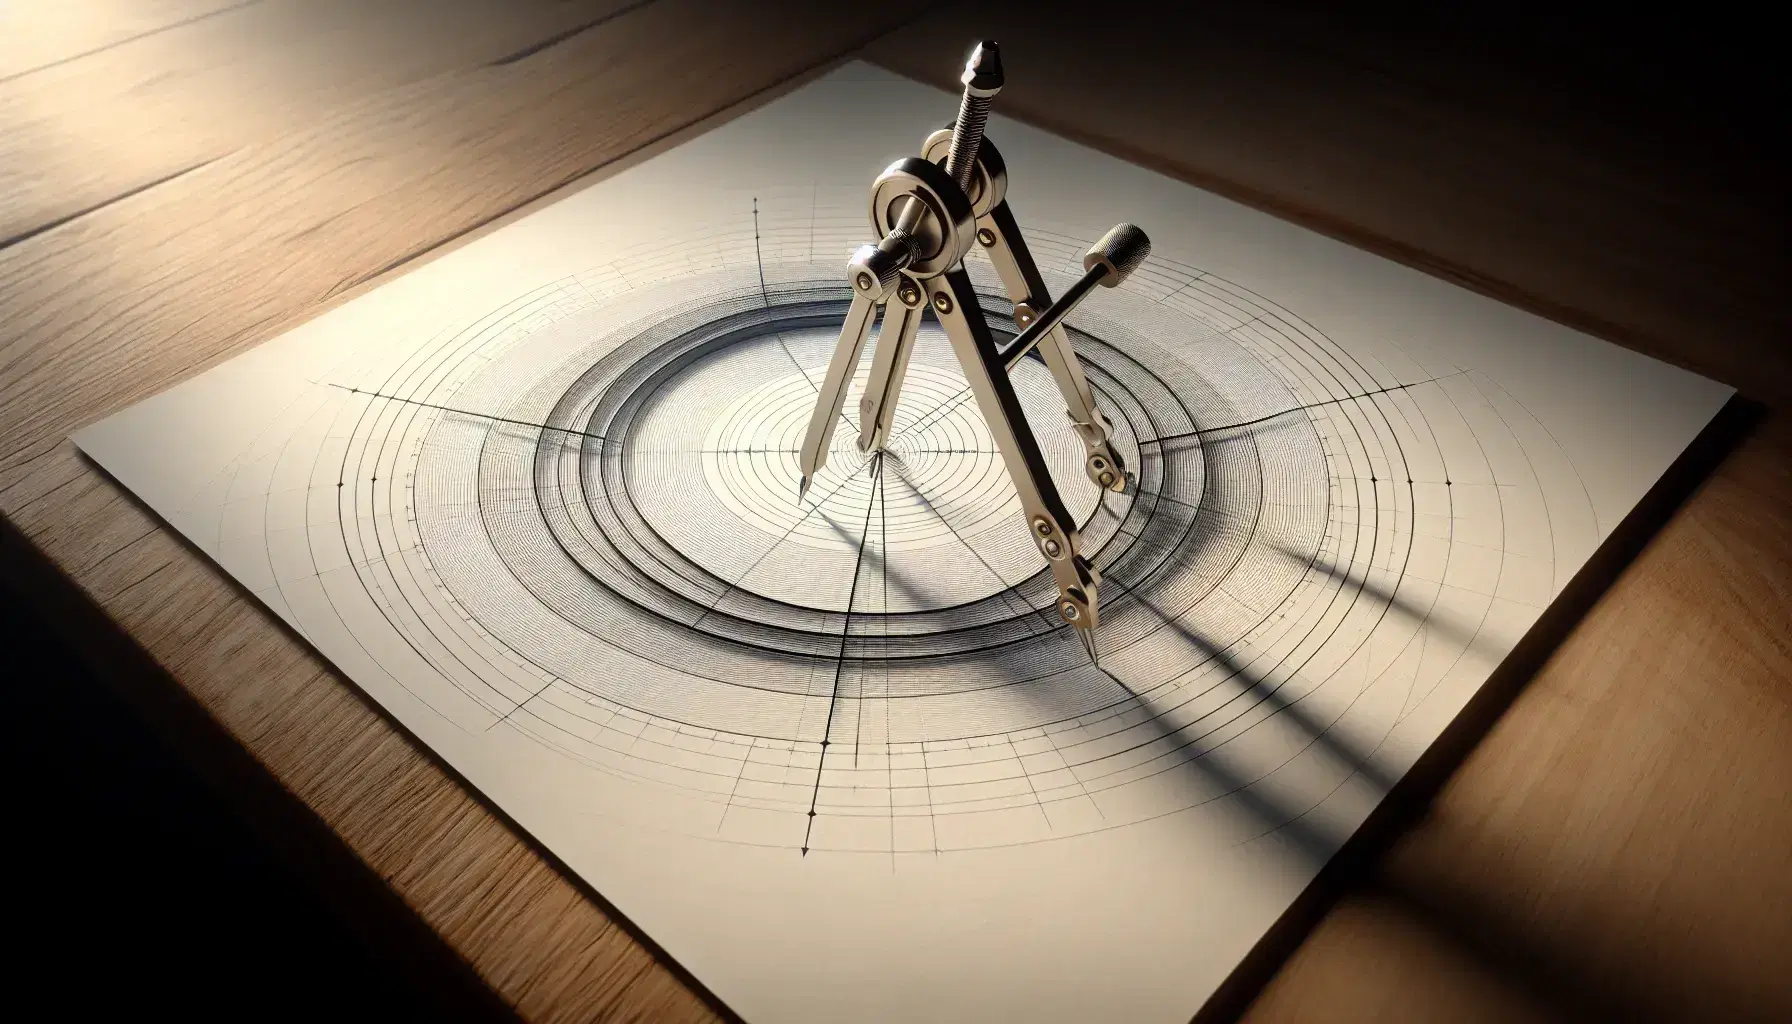 Compás de precisión metálico sobre papel con círculos concéntricos y líneas radiales dibujados, simulando un diagrama polar en superficie de madera clara.